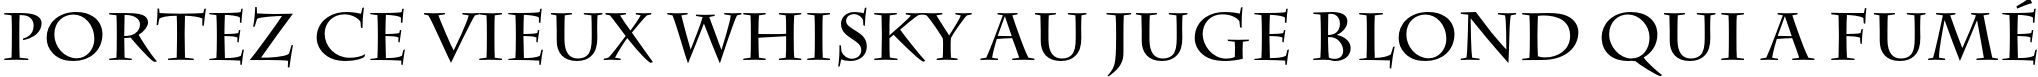 Пример написания шрифтом Charlemagne Std Bold текста на французском